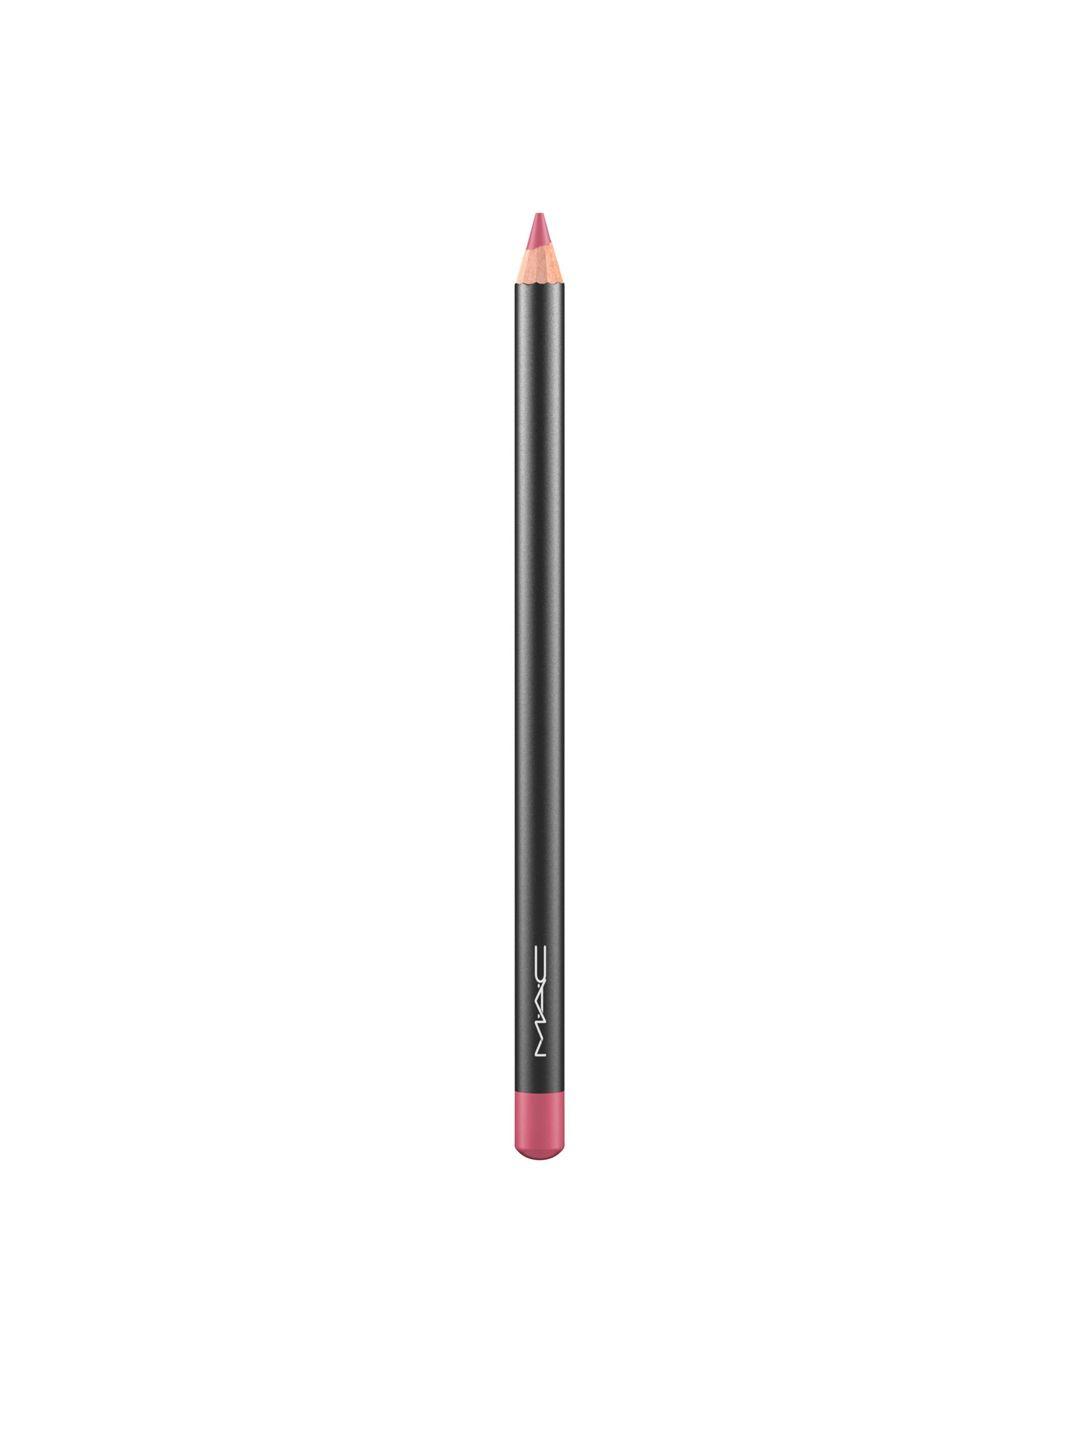 m.a.c longwear tansfer proof lip liner pencil - soar 1.45 g